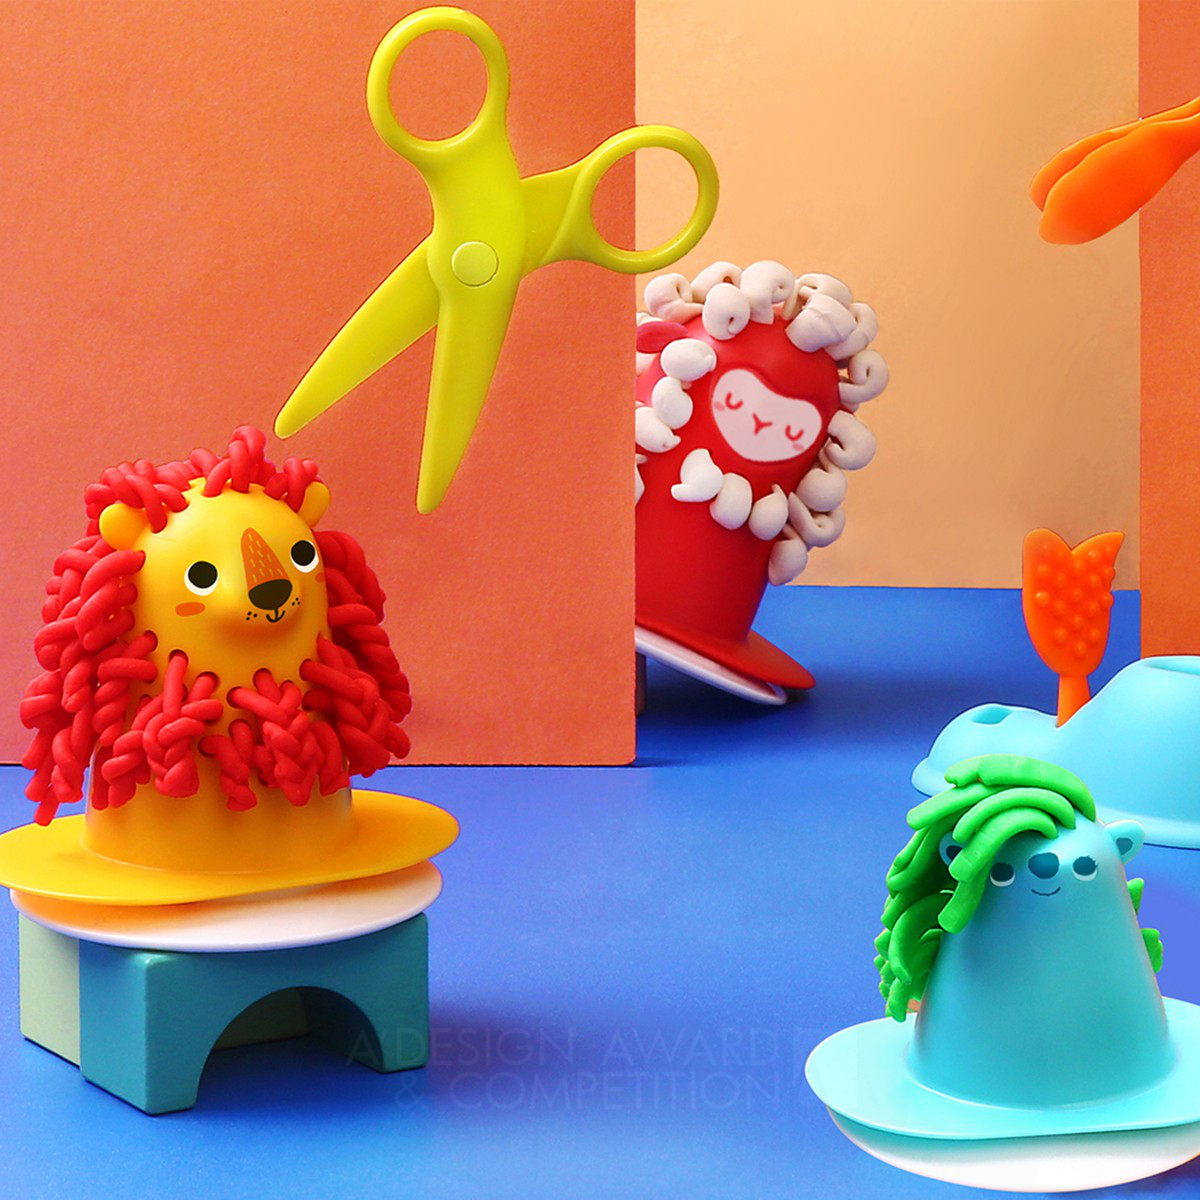 Salão de Cabelo: Um Brinquedo Sustentável para Estimular a Criatividade das Crianças